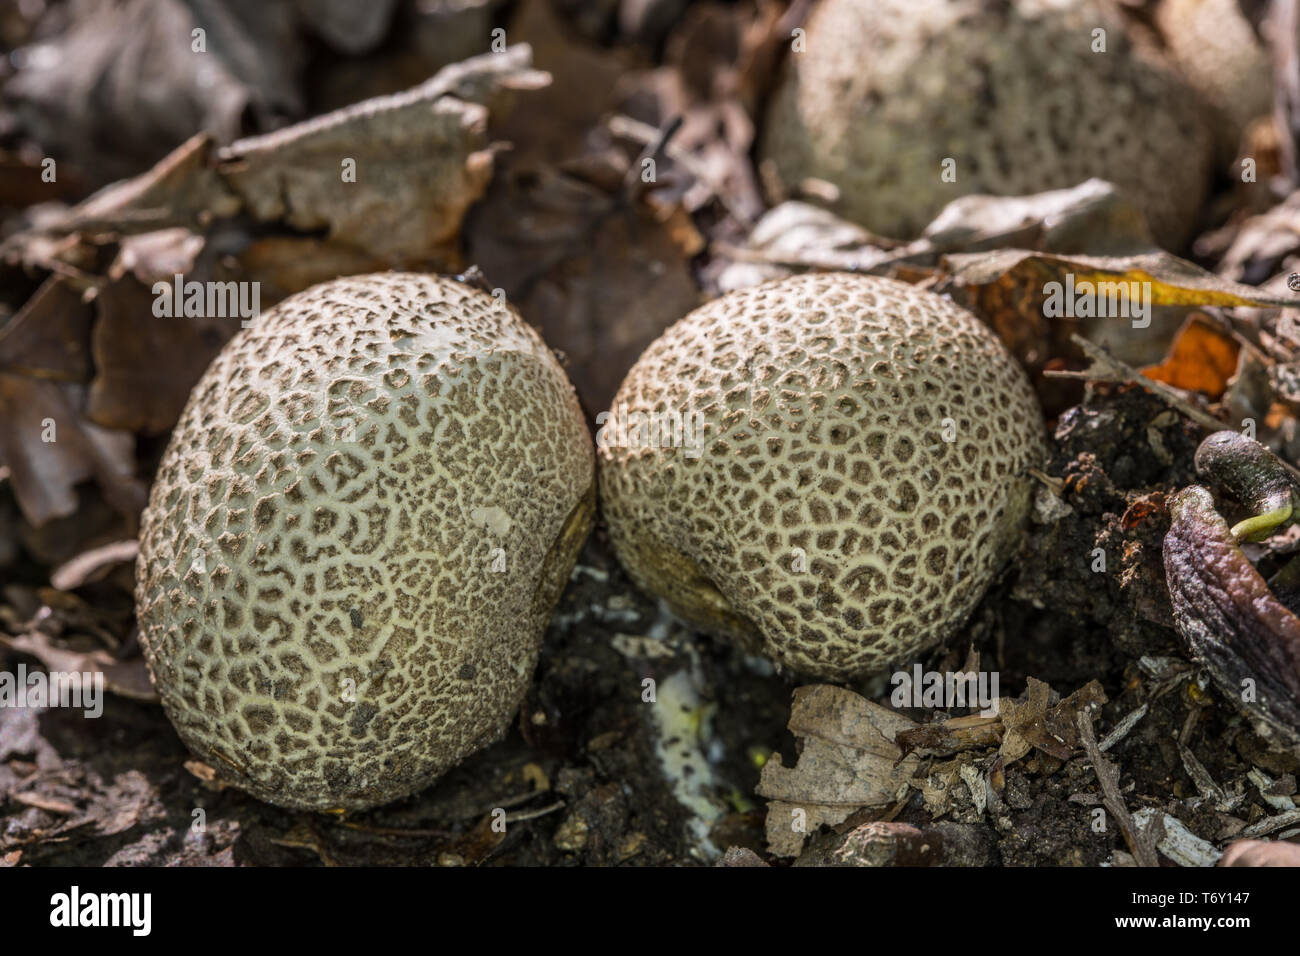 Mushroom on forest floor Stock Photo